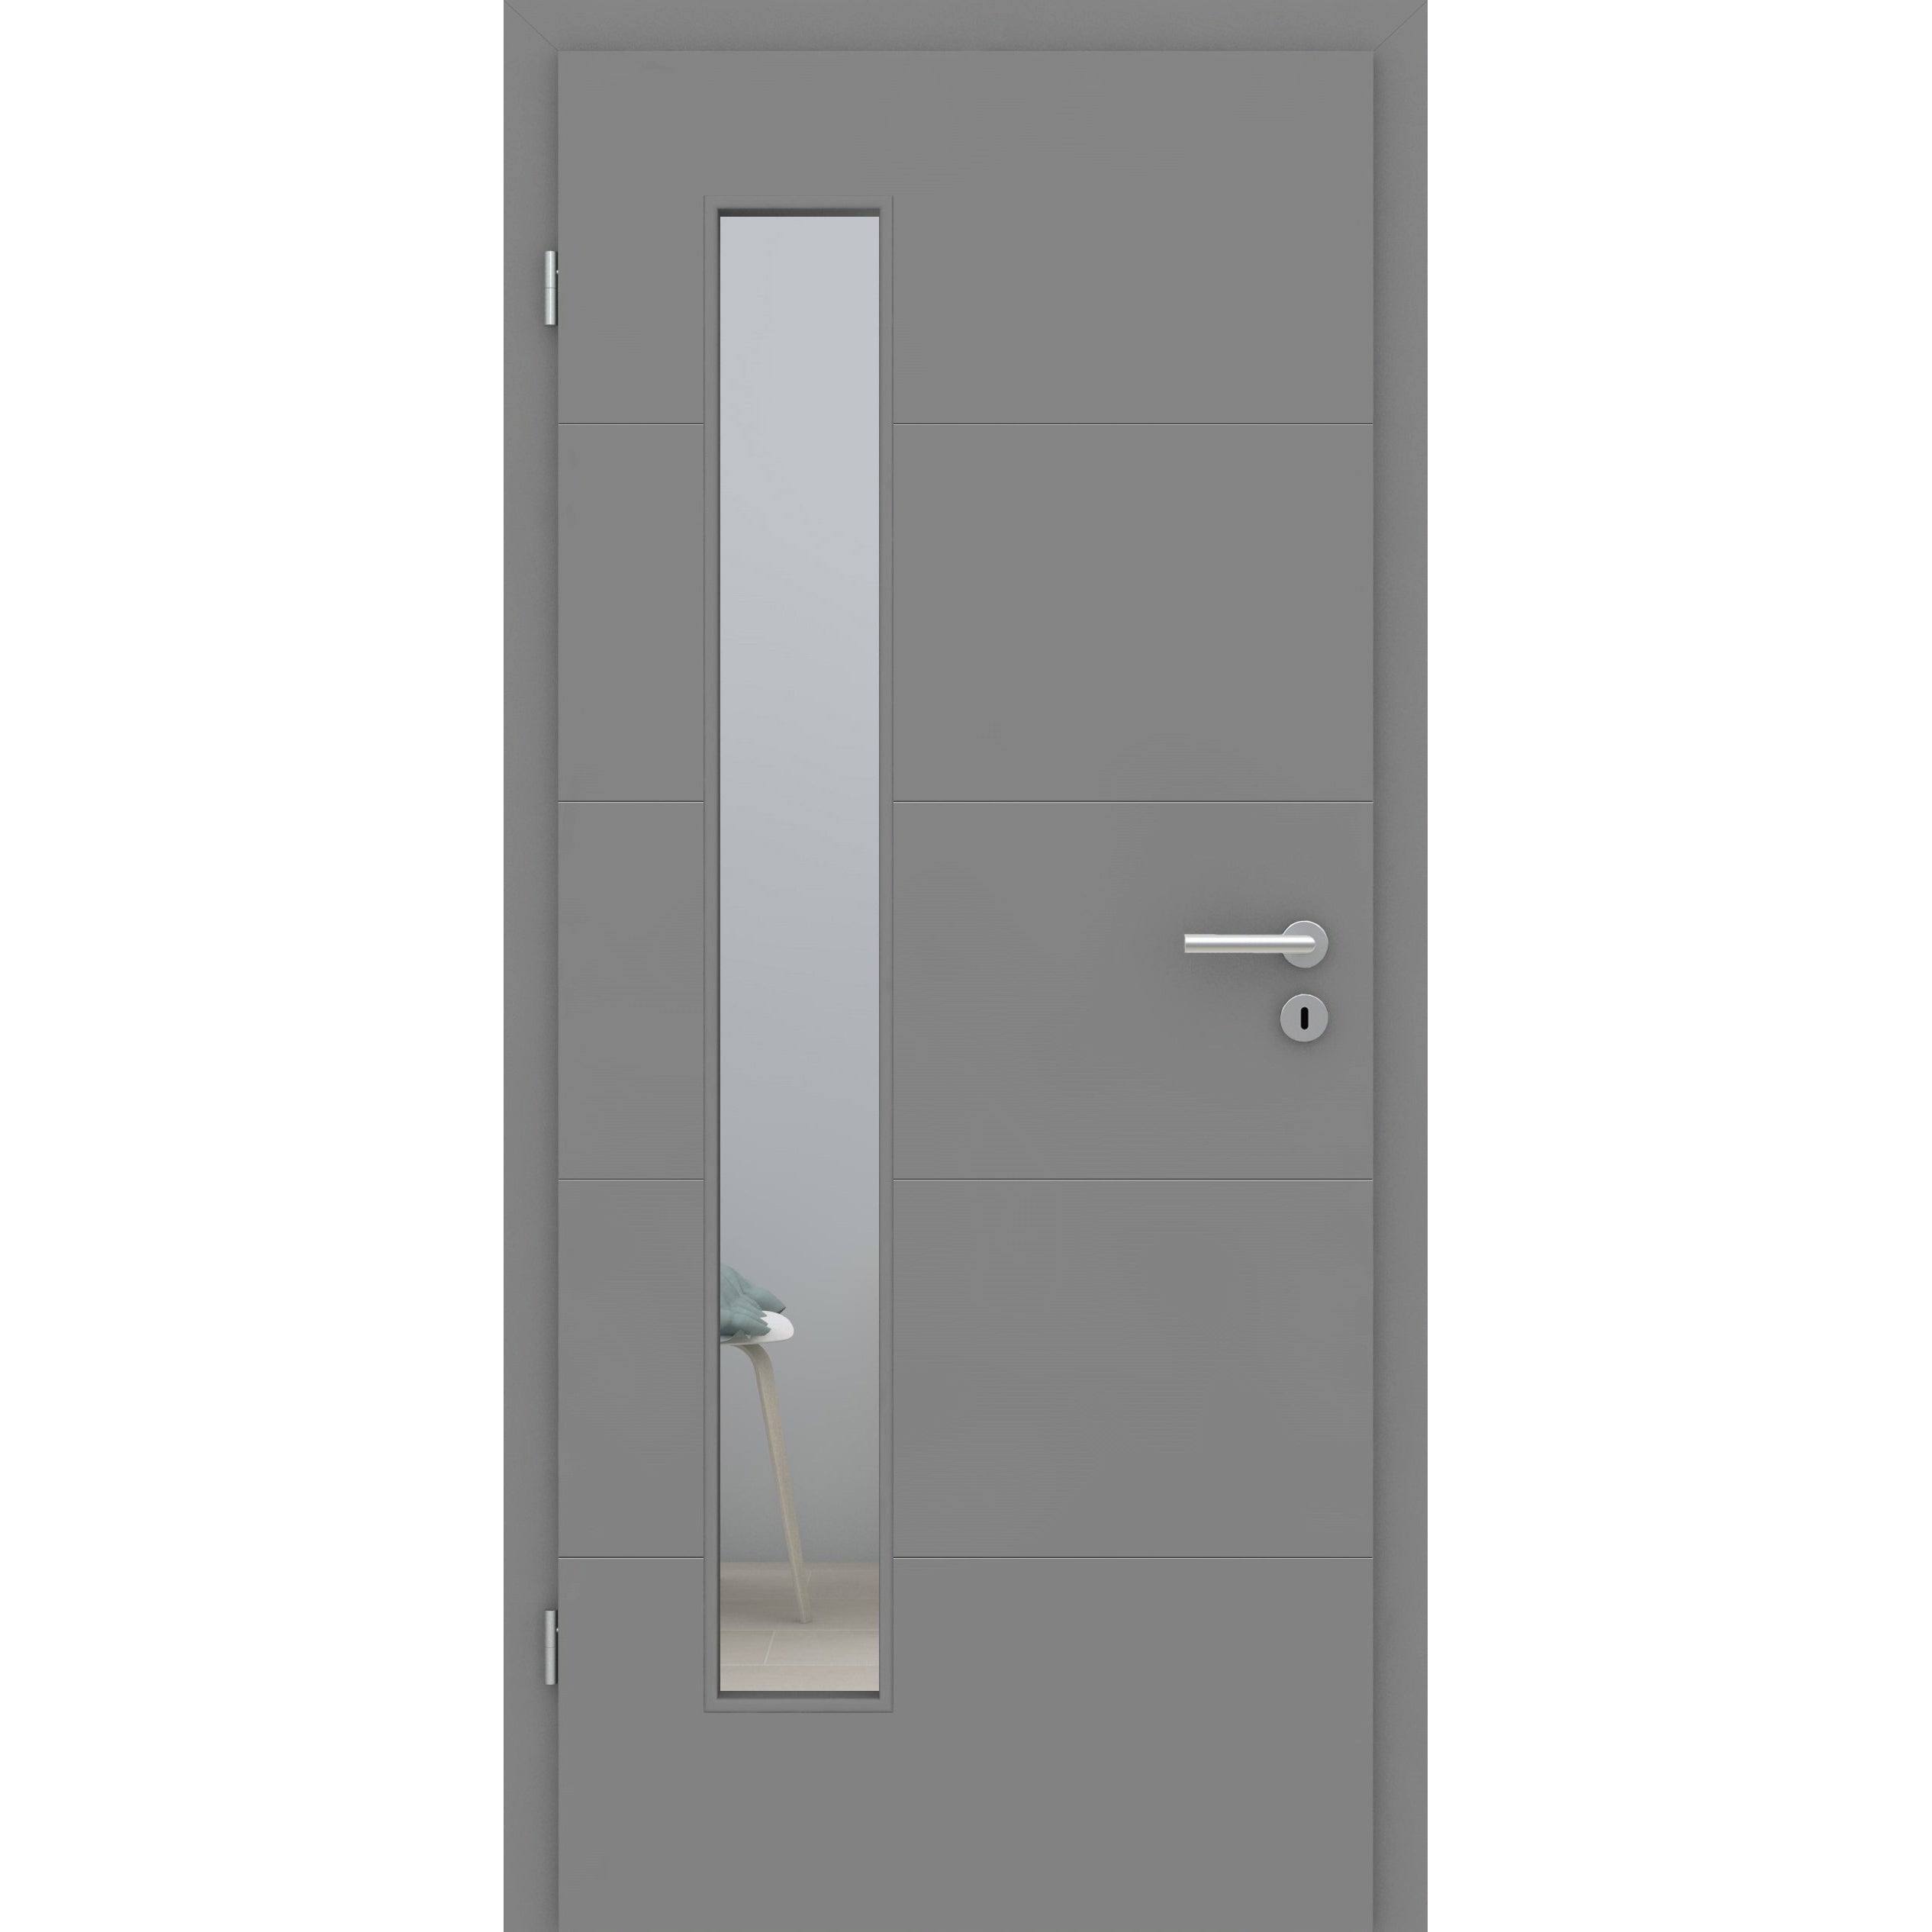 Zimmertür mit Lichtausschnitt grau 4 Rillen quer Designkante - Modell Designtür Q47LAB